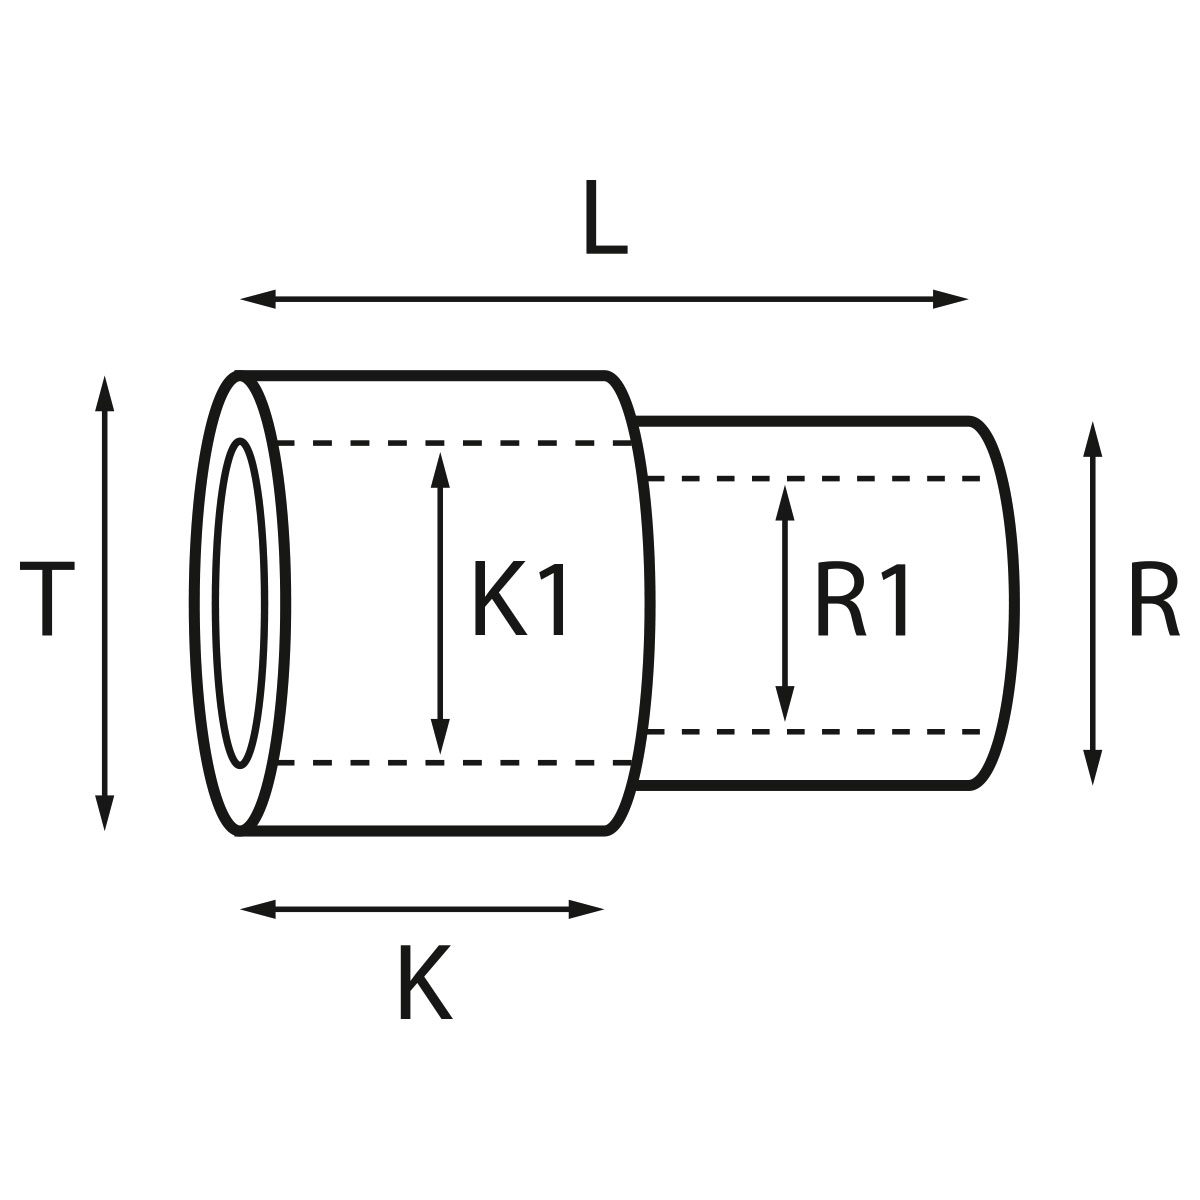 Gehäusetube Typ AS 13827, Tubus Ø 2,5 mm, Gesamtlänge 4,05 mm, für wasserdichte Kronen